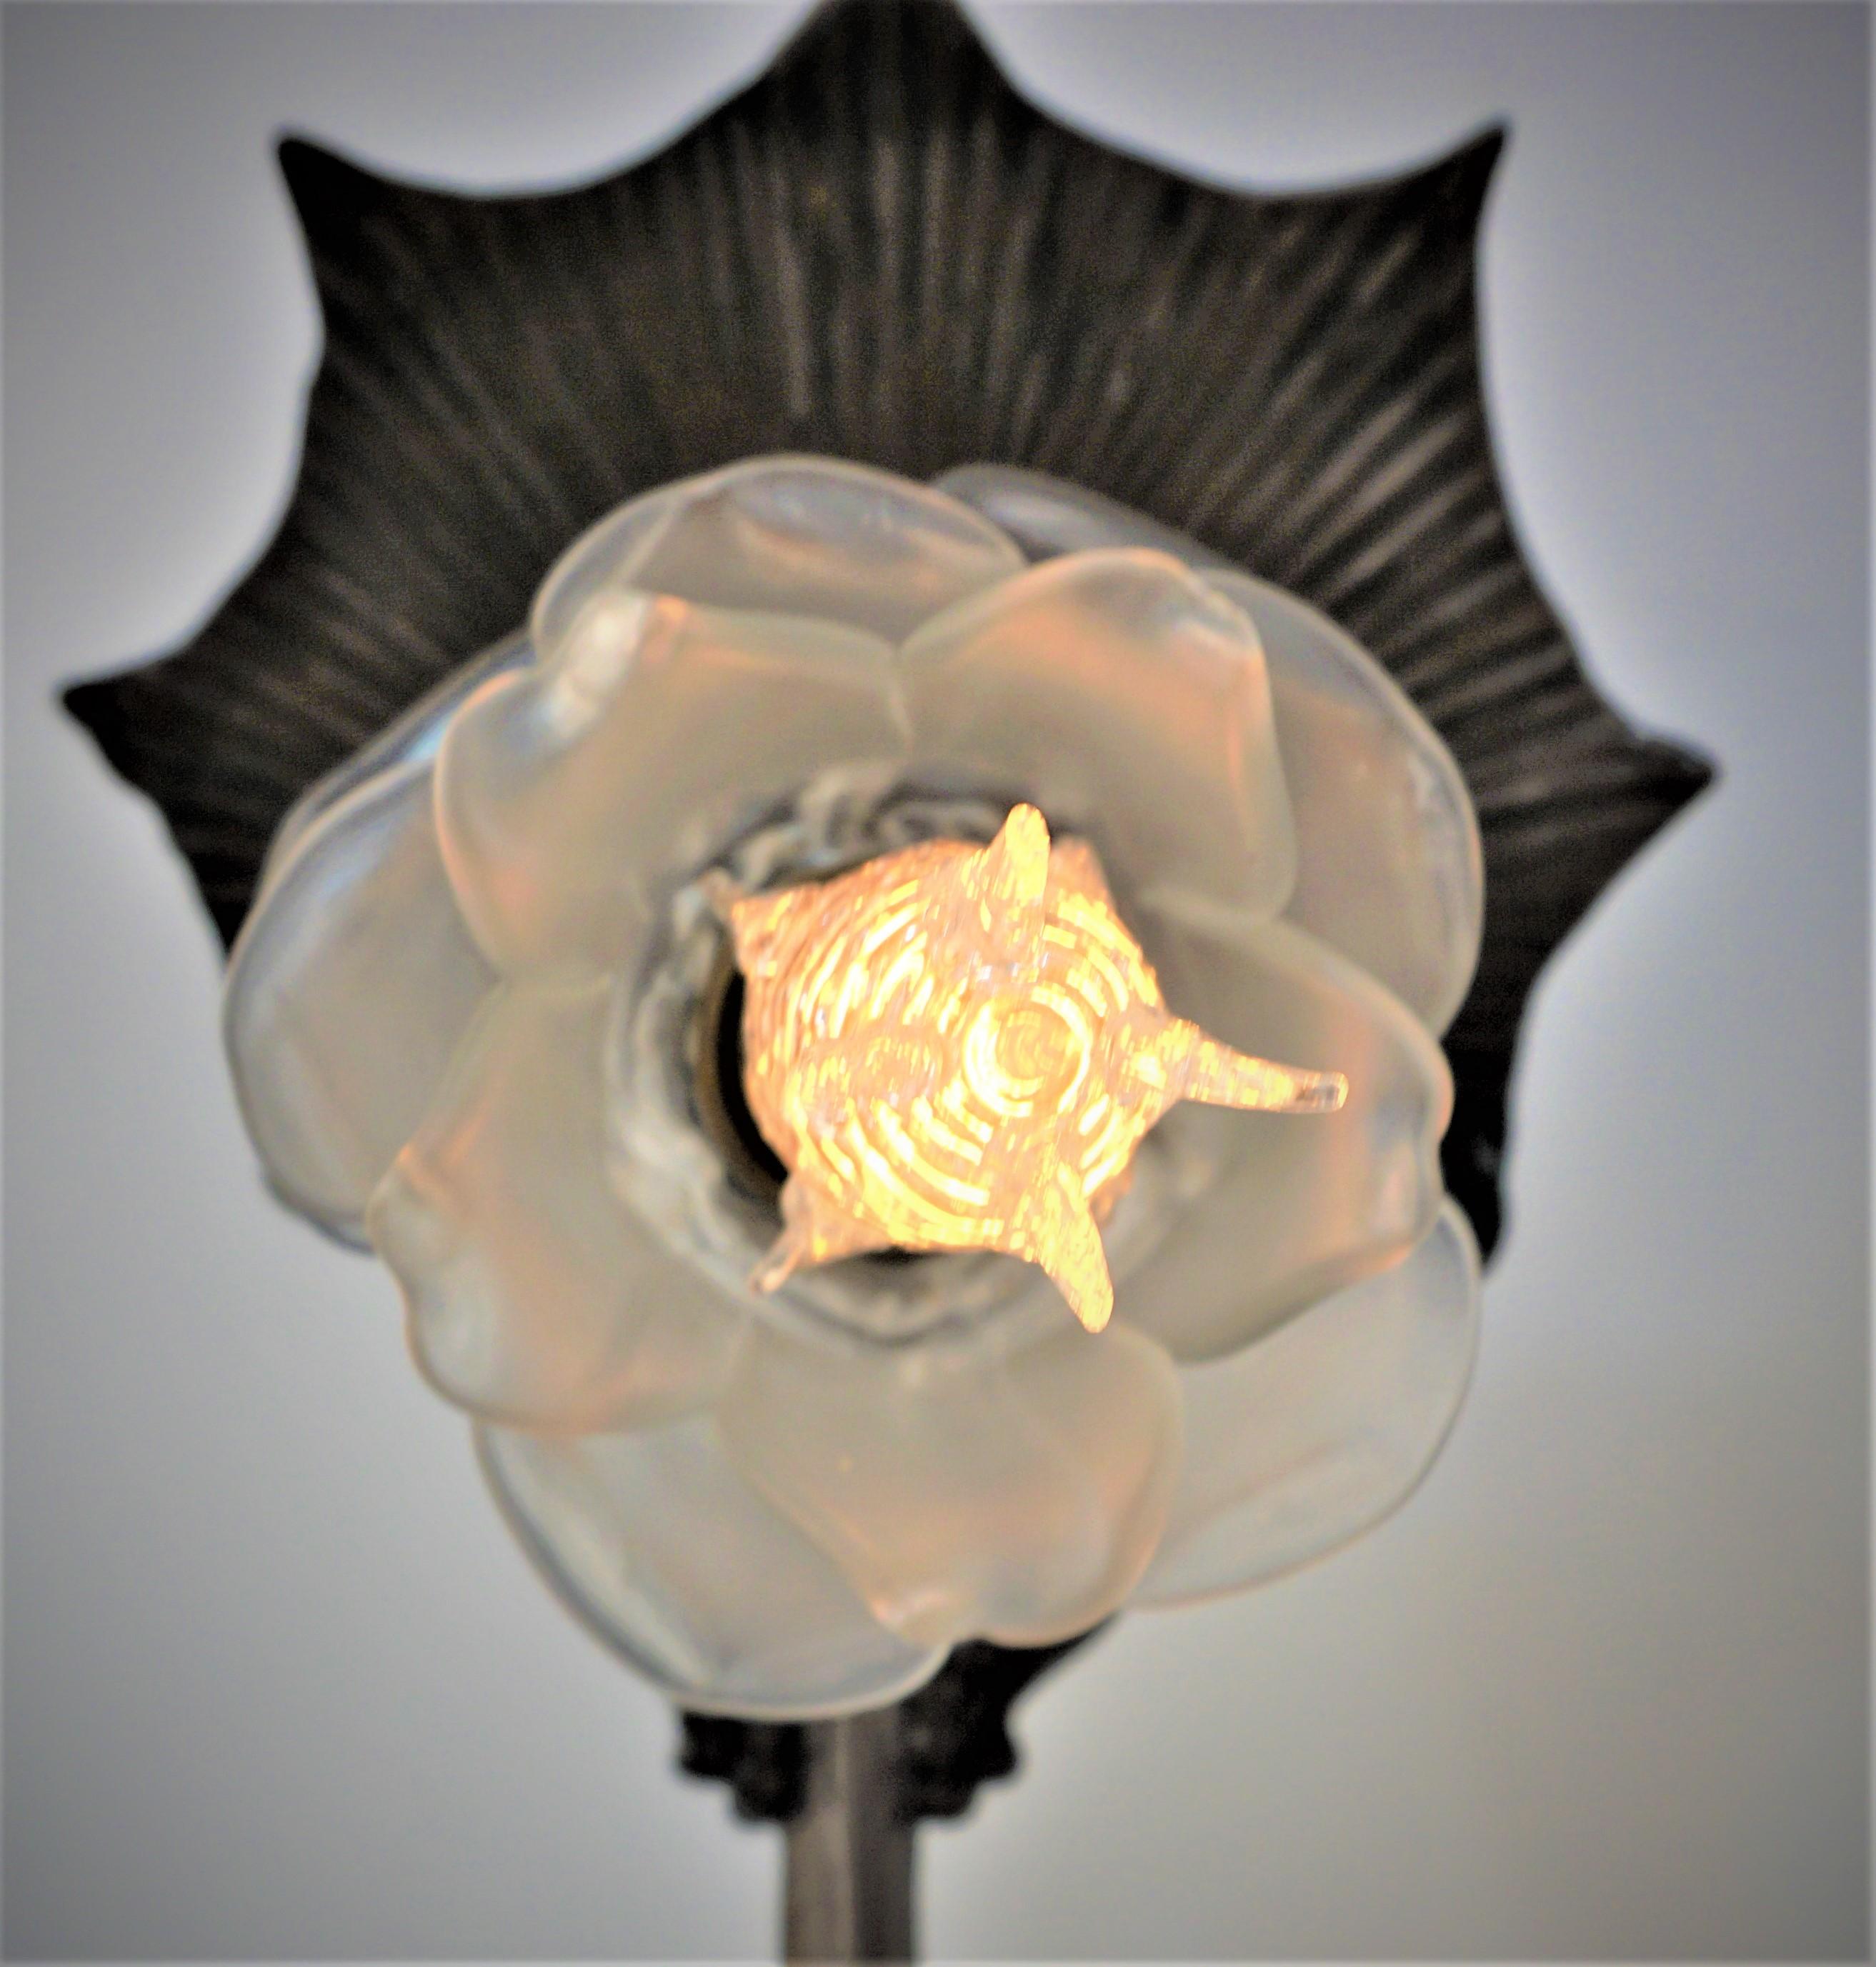 Lampe de table art nouveau en bronze brun foncé/noir en forme de flore avec abat-jour en verre soufflé rose clair givré.
 